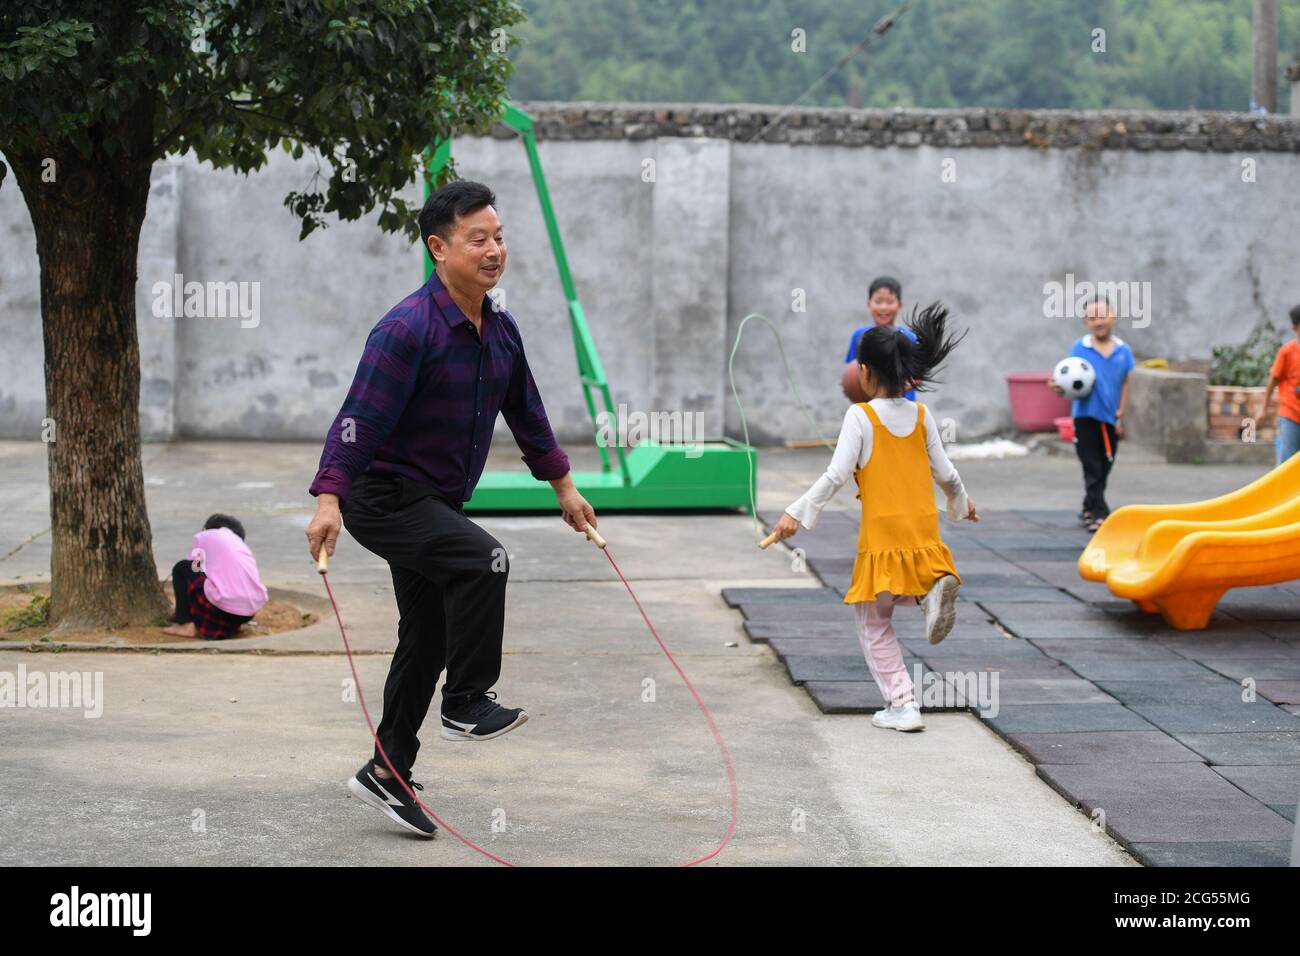 (200909) -- CHANGSHA, 9. September 2020 (Xinhua) -- Dong Zhuwen (2. L) spielt mit Schülern während einer Klassenpause an der Chagan Grundschule in der Gemeinde Huju im Bezirk Chaling, Provinz Hunan in Zentralchina, 8. September 2020. Dong Zhuwen, 63, ist Lehrer für Schüler der ersten und zweiten Klasse an der Chagan Primary School. Geboren in Huju Township, begann Dong Zhuwen seine Lehrtätigkeit hier im Jahr 1977. Nach seiner Pensionierung im Jahr 2017, entschied er sich für den Aufenthalt in der Schule und weiterhin Unterricht, da die Schule war in Mangel an Lehrern. "Ich mag Kinder, ich möchte für sie bleiben", sagte Dong. Er hofft auch, dass mehr Stockfoto